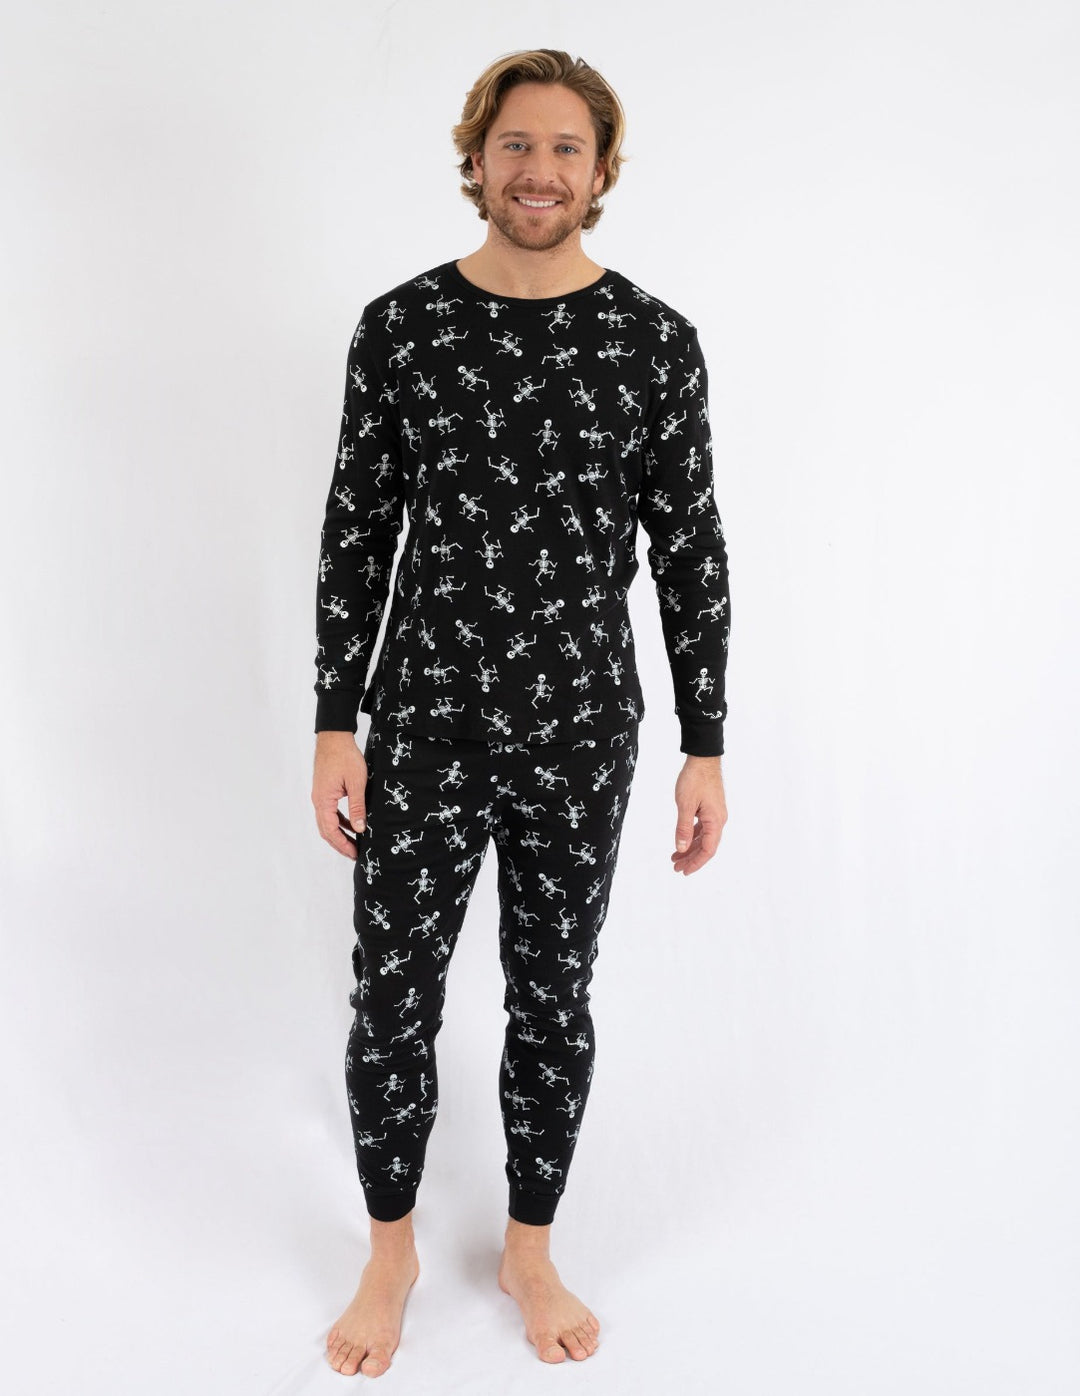 Halloween Pyjamas – The Christmas Pyjamas